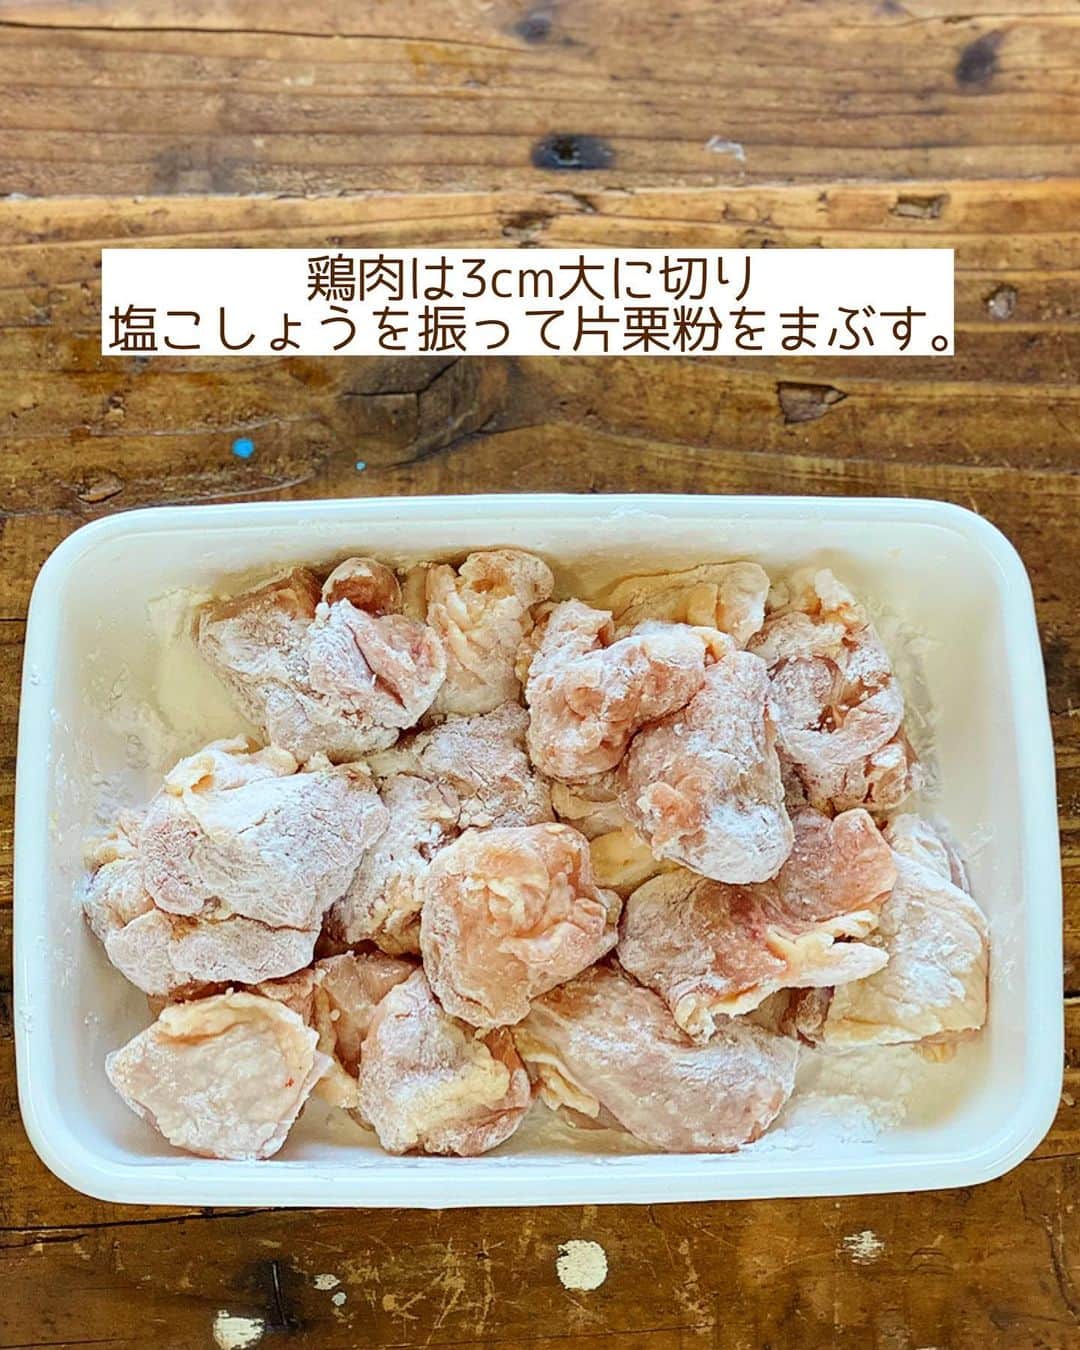 Mizuki【料理ブロガー・簡単レシピ】さんのインスタグラム写真 - (Mizuki【料理ブロガー・簡単レシピ】Instagram)「・給食の大人気メニュー💕 ⁡ ［#レシピ ］ ーーーーーーーーーーーーーーーー 給食で大人気！鶏肉のレモン揚げ ーーーーーーーーーーーーーーーー ⁡ ⁡ ⁡ おはようございます☺️ ⁡ 今日ご紹介させていただくのは 給食の大人気メニュー \ 鶏肉のレモン揚げ / ⁡ これ、多少の違いはあれど 全国的に有名ですね💕 給食調理員さんに聞いて作ってみたら おいしくてびっくりしました🤭 ⁡ このレシピは漬け込み不要！ タレはレンジで作れます✨ 昔のレシピより 更に手軽にアップデートしましたので よかったらお試しくださいね🥰✨ ⁡ ⁡ ⁡ 💬💬💬 謎の暮らしアカウント作りました🏠 変なライブはこっちでやってます🤫 →(@mizuki_kurashi ) ⁡ ⁡ 【簡単・時短・節約レシピ更新中🔻】 @mizuki_31cafe ⁡ ⁡ ⁡ ＿＿＿＿＿＿＿＿＿＿＿＿＿＿＿＿＿＿＿ 【2人分】 鶏もも肉(むね肉でも)...大1枚(300g) 塩こしょう...少々 ●醤油・砂糖...各大1.5 ●水・レモン汁...各小2 片栗粉・サラダ油...各適量 ⁡ 1.鶏肉は3cm大に切り、塩こしょうを振って片栗粉をまぶす。 2.小さめのフライパンに5mmの油を中火で熱し、1を返しながら揚げ焼きにし(6分くらい)、火が通ったら油を切る。 3.(揚げ焼きしている間に)耐熱ボウルに●を入れ、600Wのレンジで1分加熱する。 4.3のボウルに2を入れてからめ、器に盛る。 ￣￣￣￣￣￣￣￣￣￣￣￣￣￣￣￣￣￣￣ ⁡ ⁡ 《ポイント》 ♦︎レモン汁はポッカレモンなど市販のものでOK♩ ♦︎鶏むね肉を使用する場合は1cm厚さの削ぎ切りにし、酒小2を揉み込んでから塩こしょう→片栗粉をまぶしてください♩ ♦︎片栗粉をまぶしたら、手の平でギュッと握ると衣が剥がれにくくなります♩ ♦︎酸味は控えめでお子さんも食べやすい味です♩ ⁡ ⁡ ⁡ ⁡ ⁡ ⁡ 𖤣𖥧𖥣𖡡𖥧𖤣✨ 愛用している調理器具や器などは #楽天ROOMに載せてます ‎𐩢𐩺 (ハイライトから飛べます🛍) ⁡ ⁡ ⁡ ⁡ ⁡ ⁡ 🔶全国の書店・ネット書店で発売中🔶 ⁡ ✼••┈┈┈┈┈••✼••┈┈┈┈┈••✼ 今日のごはんこれに決まり！ ‎𓊆#Mizukiのレシピノート 500品𓊇 ✼••┈┈┈┈┈••✼••┈┈┈┈┈••✼ ⁡ ˗ˏˋ おかげさまで25万部突破 ˎˊ˗ 料理レシピ本大賞準大賞を受賞しました🙇‍♀️ ⁡ 6000点の中からレシピを厳選し まさかの【500レシピ掲載】❣️ 肉や魚のメインおかずはもちろん 副菜、丼、麺、スープ、お菓子 ハレの日のレシピ、鍋のレシピまで 全てこの一冊で完結𓌉◯𓇋✨ ⁡ ⁡ ⁡ ⁡ ✼••┈┈┈••✼••┈┈┈••✼ Mizukiのカンタン手作り   𓊆 #3時のおやつ 𓊇 ✼••┈┈┈••✼••┈┈┈••✼ ⁡ 『3分クッキング』で連載中の 「Mizukiのカンタン手作り」 ‎4年分のおやつが1冊になりました！ ❝オーブンなしで❞ 身近な材料と道具でできる 簡単、手軽なおやつを80品🍪 ⁡ ⁡ ⁡ ⁡ ⁡ #鶏肉のレモン揚げm #鶏肉のレモン揚げ #給食 #給食レシピ #再現レシピ #鶏肉レシピ #唐揚げ #からあげ #節約料理 #簡単料理  #時短料理 #料理 #mizukiレシピ  #アルモンデ #時短レシピ #節約レシピ #簡単レシピ」5月19日 6時18分 - mizuki_31cafe